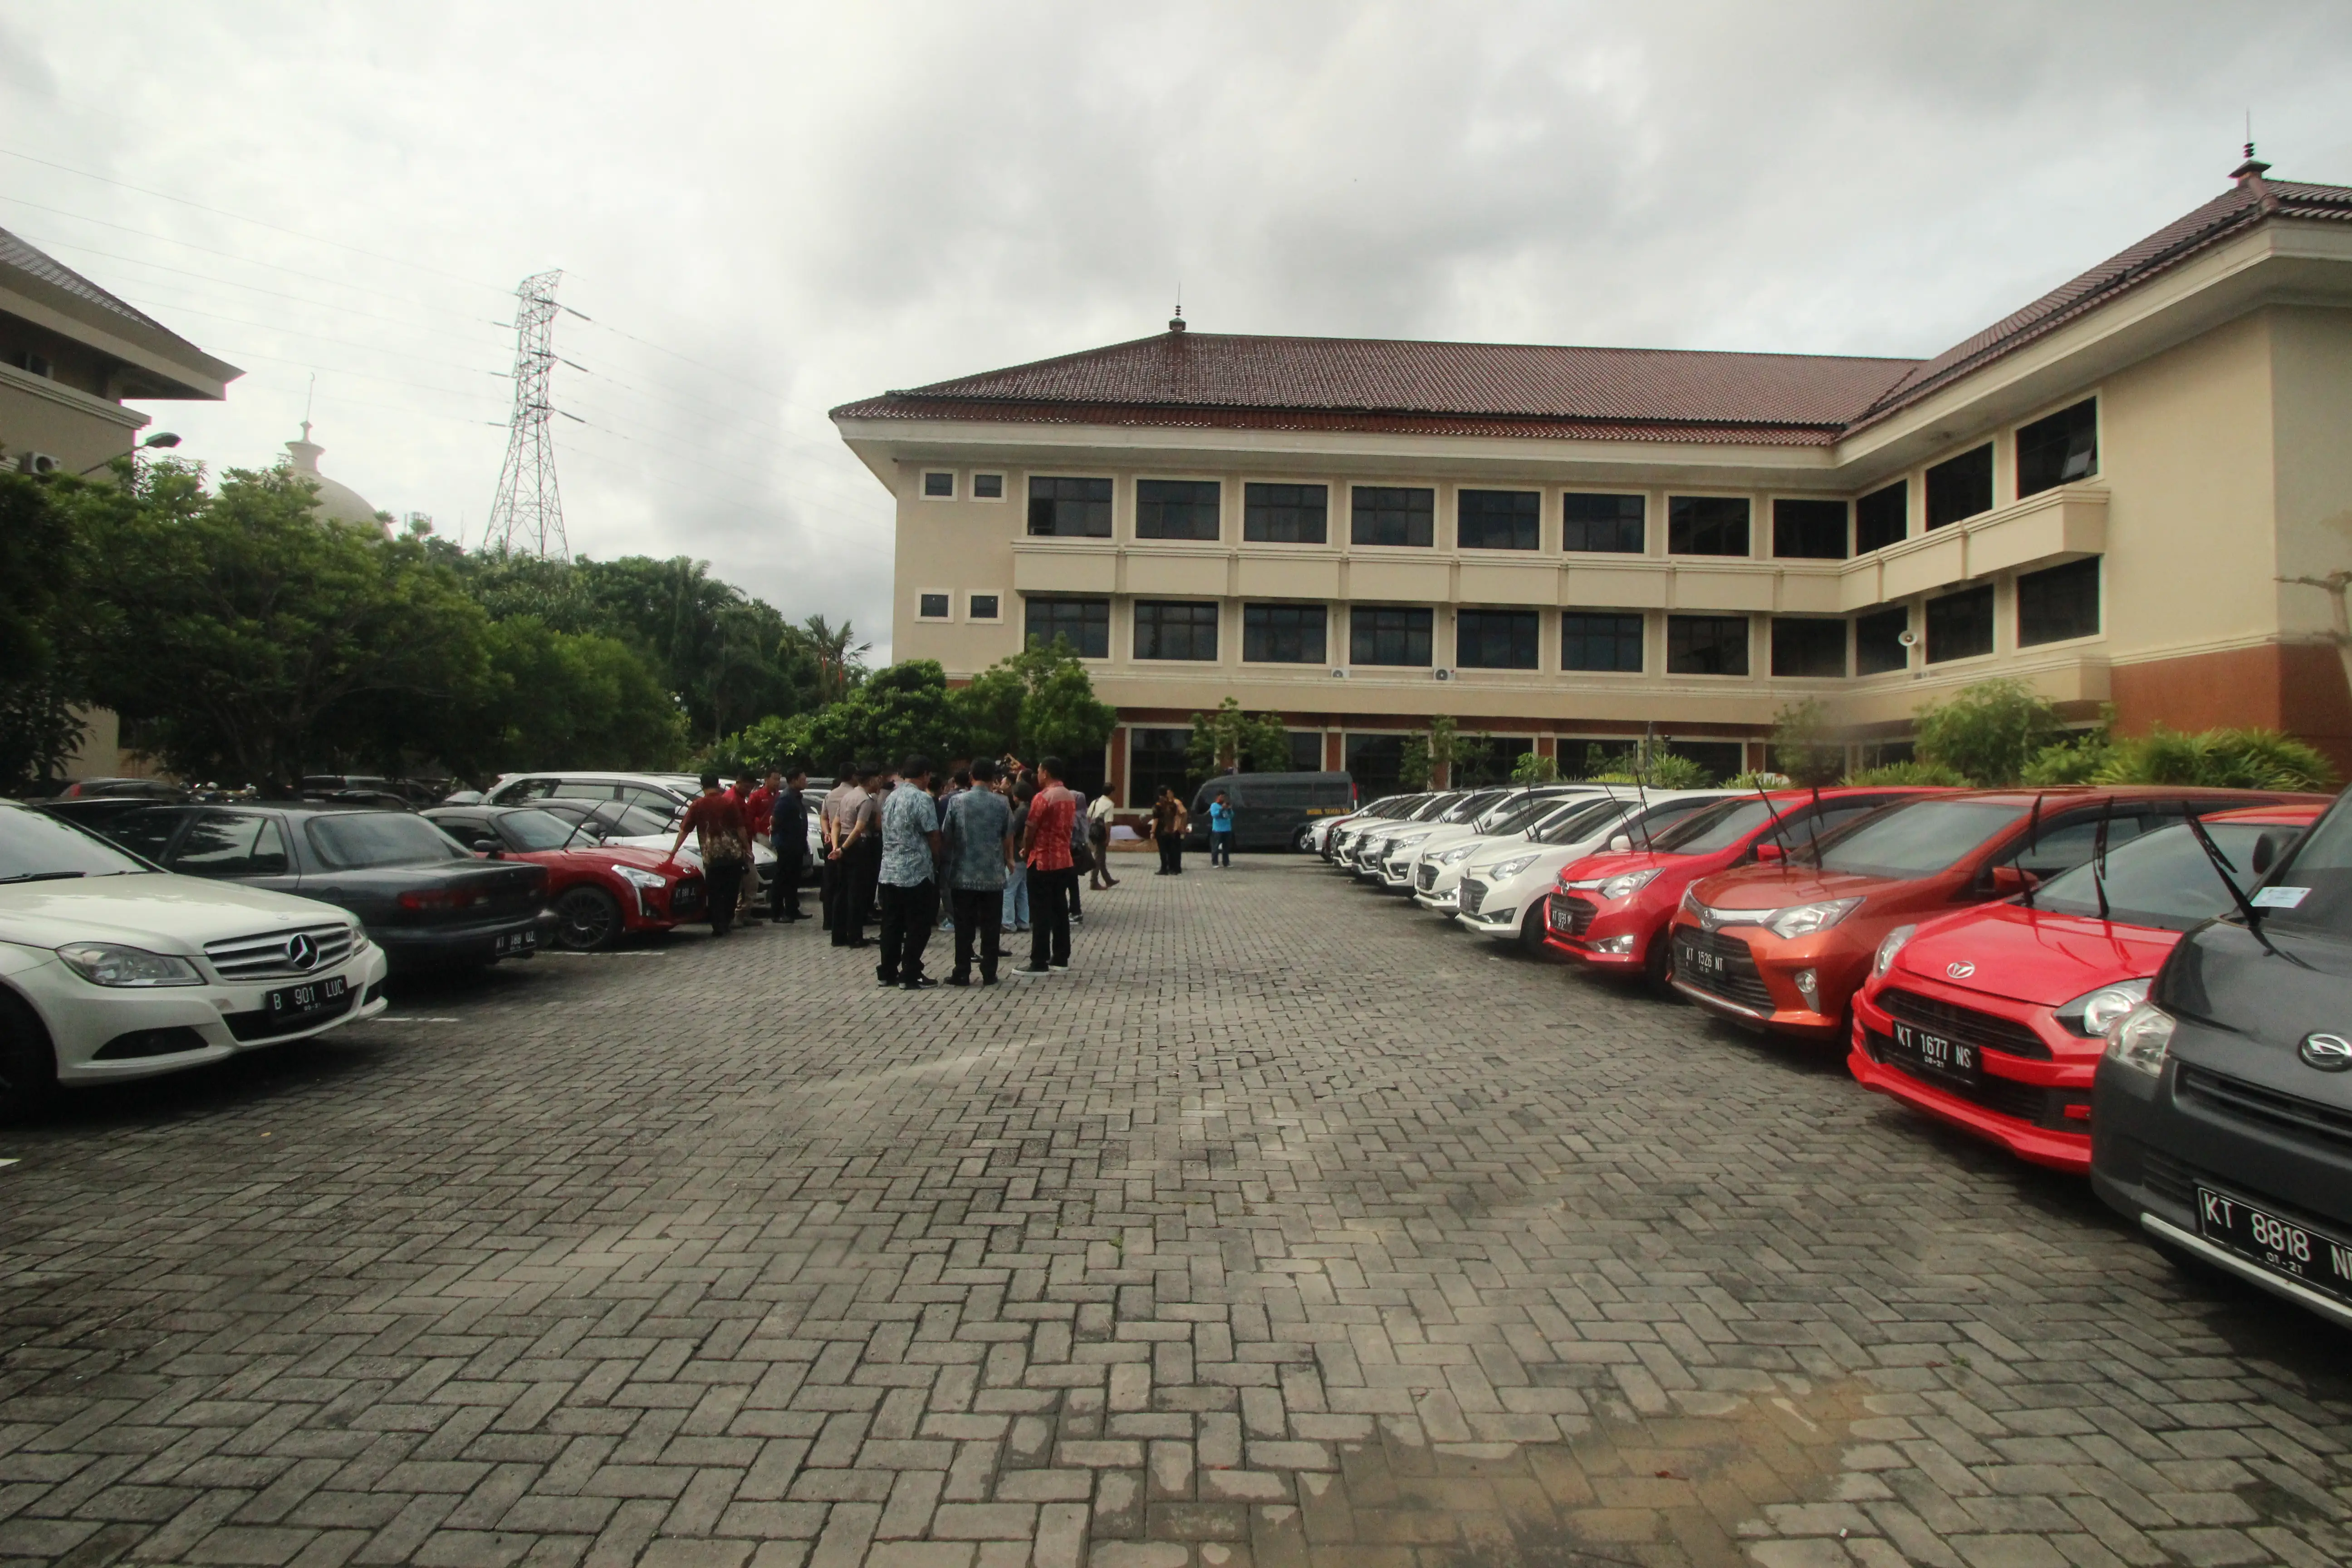 Admin perusahaan otomotif diketahui memiliki 18 mobil mewah berbagai merek. (Liputan6.com/Abelda Gunawan)